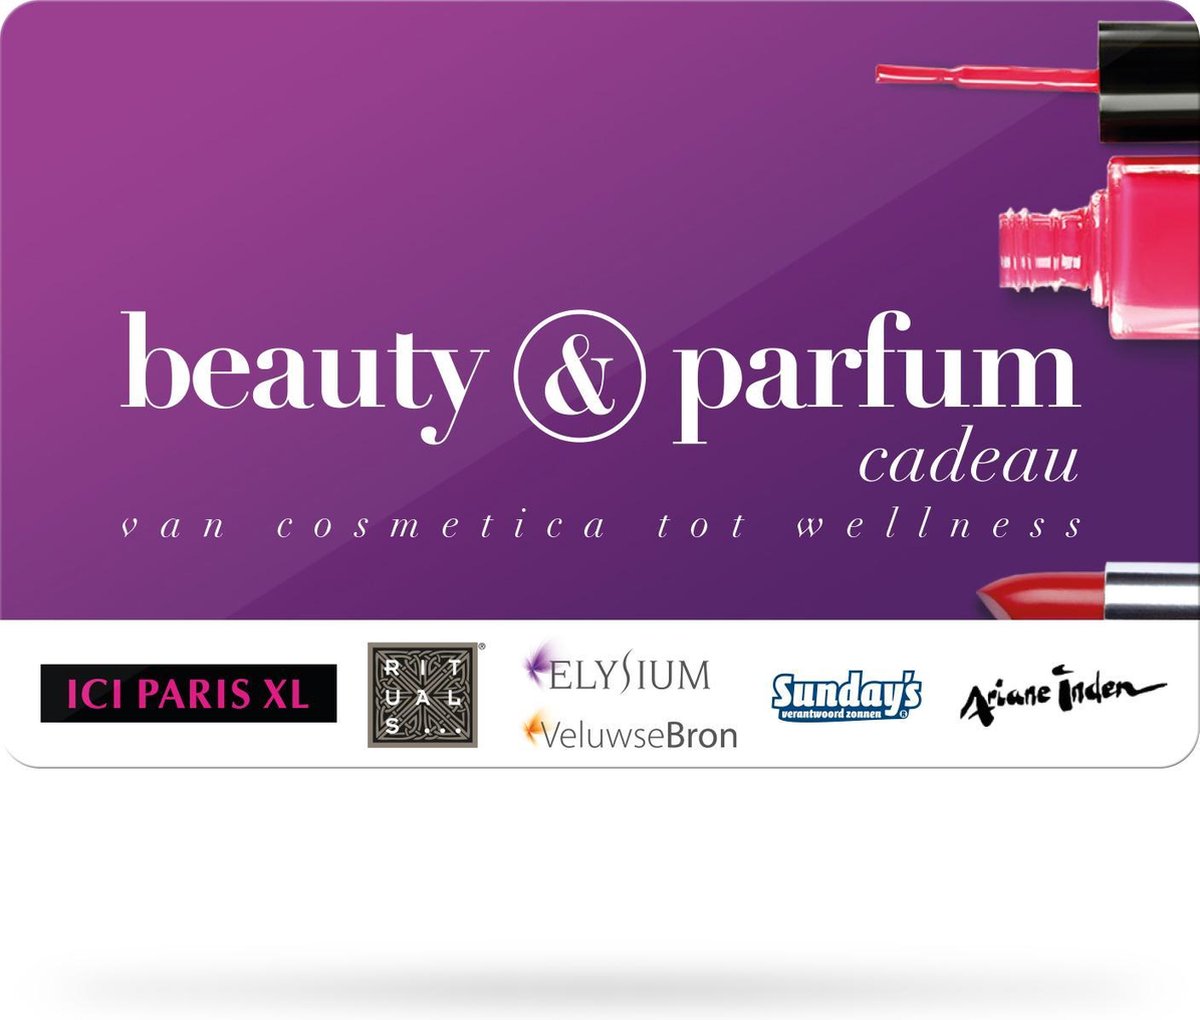 Zwerver Heerlijk Voorschrift Beauty & Parfum - 15 euro | bol.com